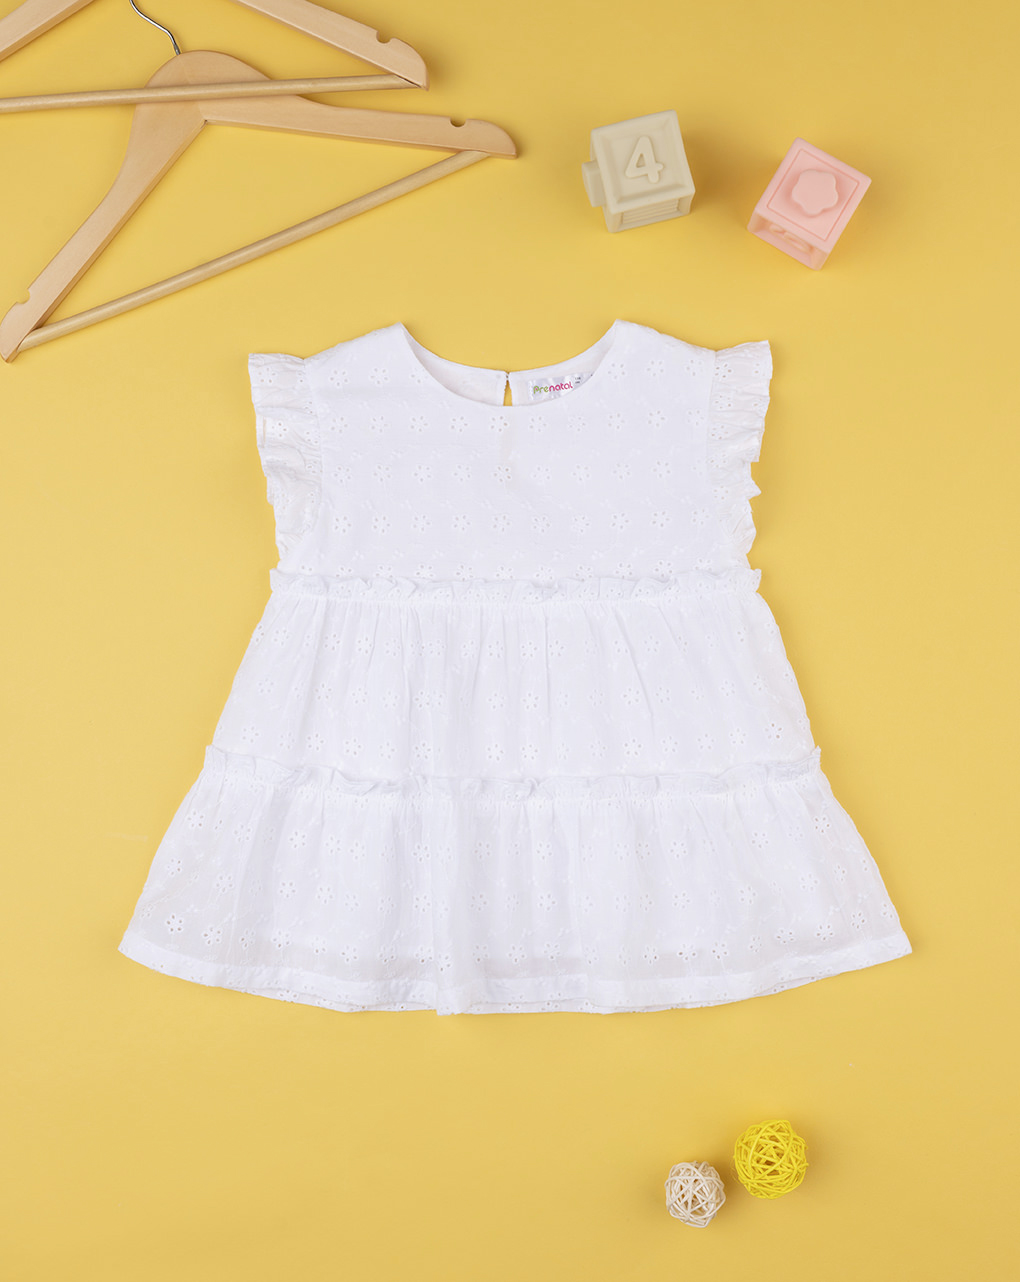 παιδικό πουκάμισο λευκό με δαντέλα sangallo για κορίτσι